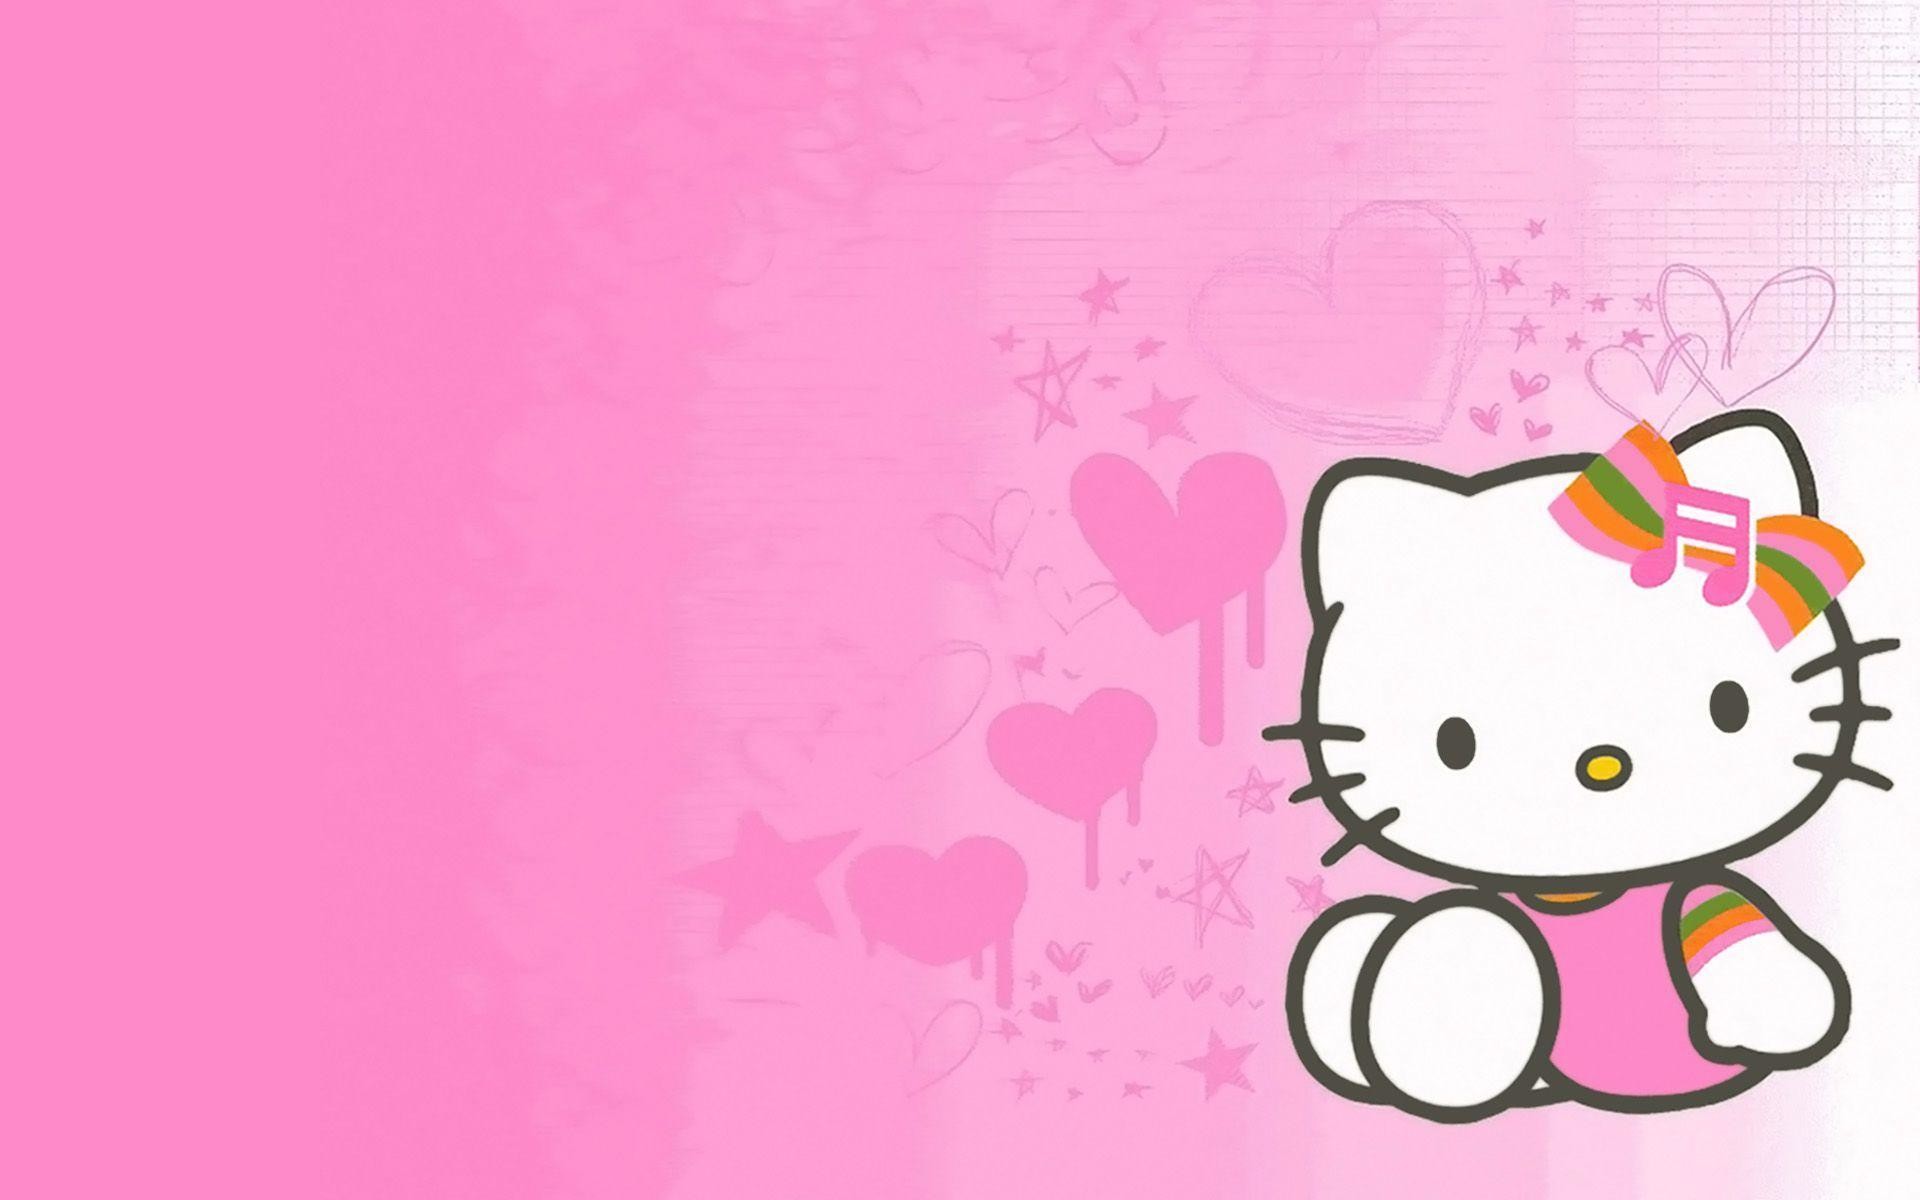 Cô gái Năm Gà đang chào đón bạn với những hình ảnh Hello Kitty đầy tình cảm và dễ thương. Khám phá bộ sưu tập được yêu thích tại đây để cập nhật ngay những thông tin mới nhất về Hello Kitty và bạn bè của cô ấy.